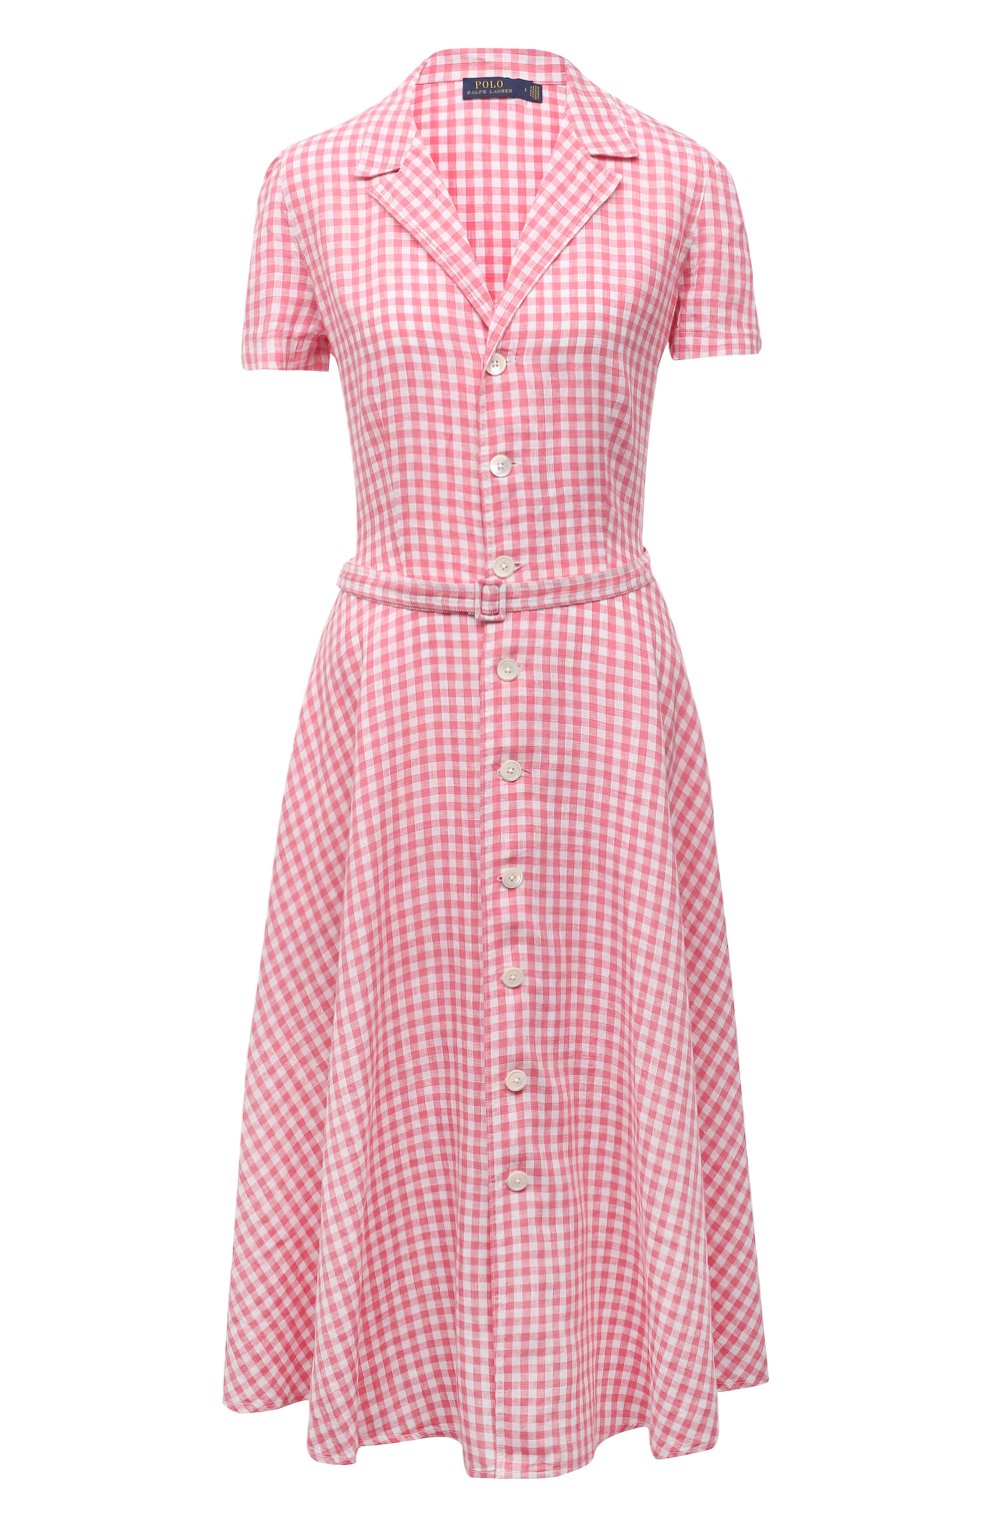 Женское розовое льняное платье POLO RALPH LAUREN — купить за 29250 руб